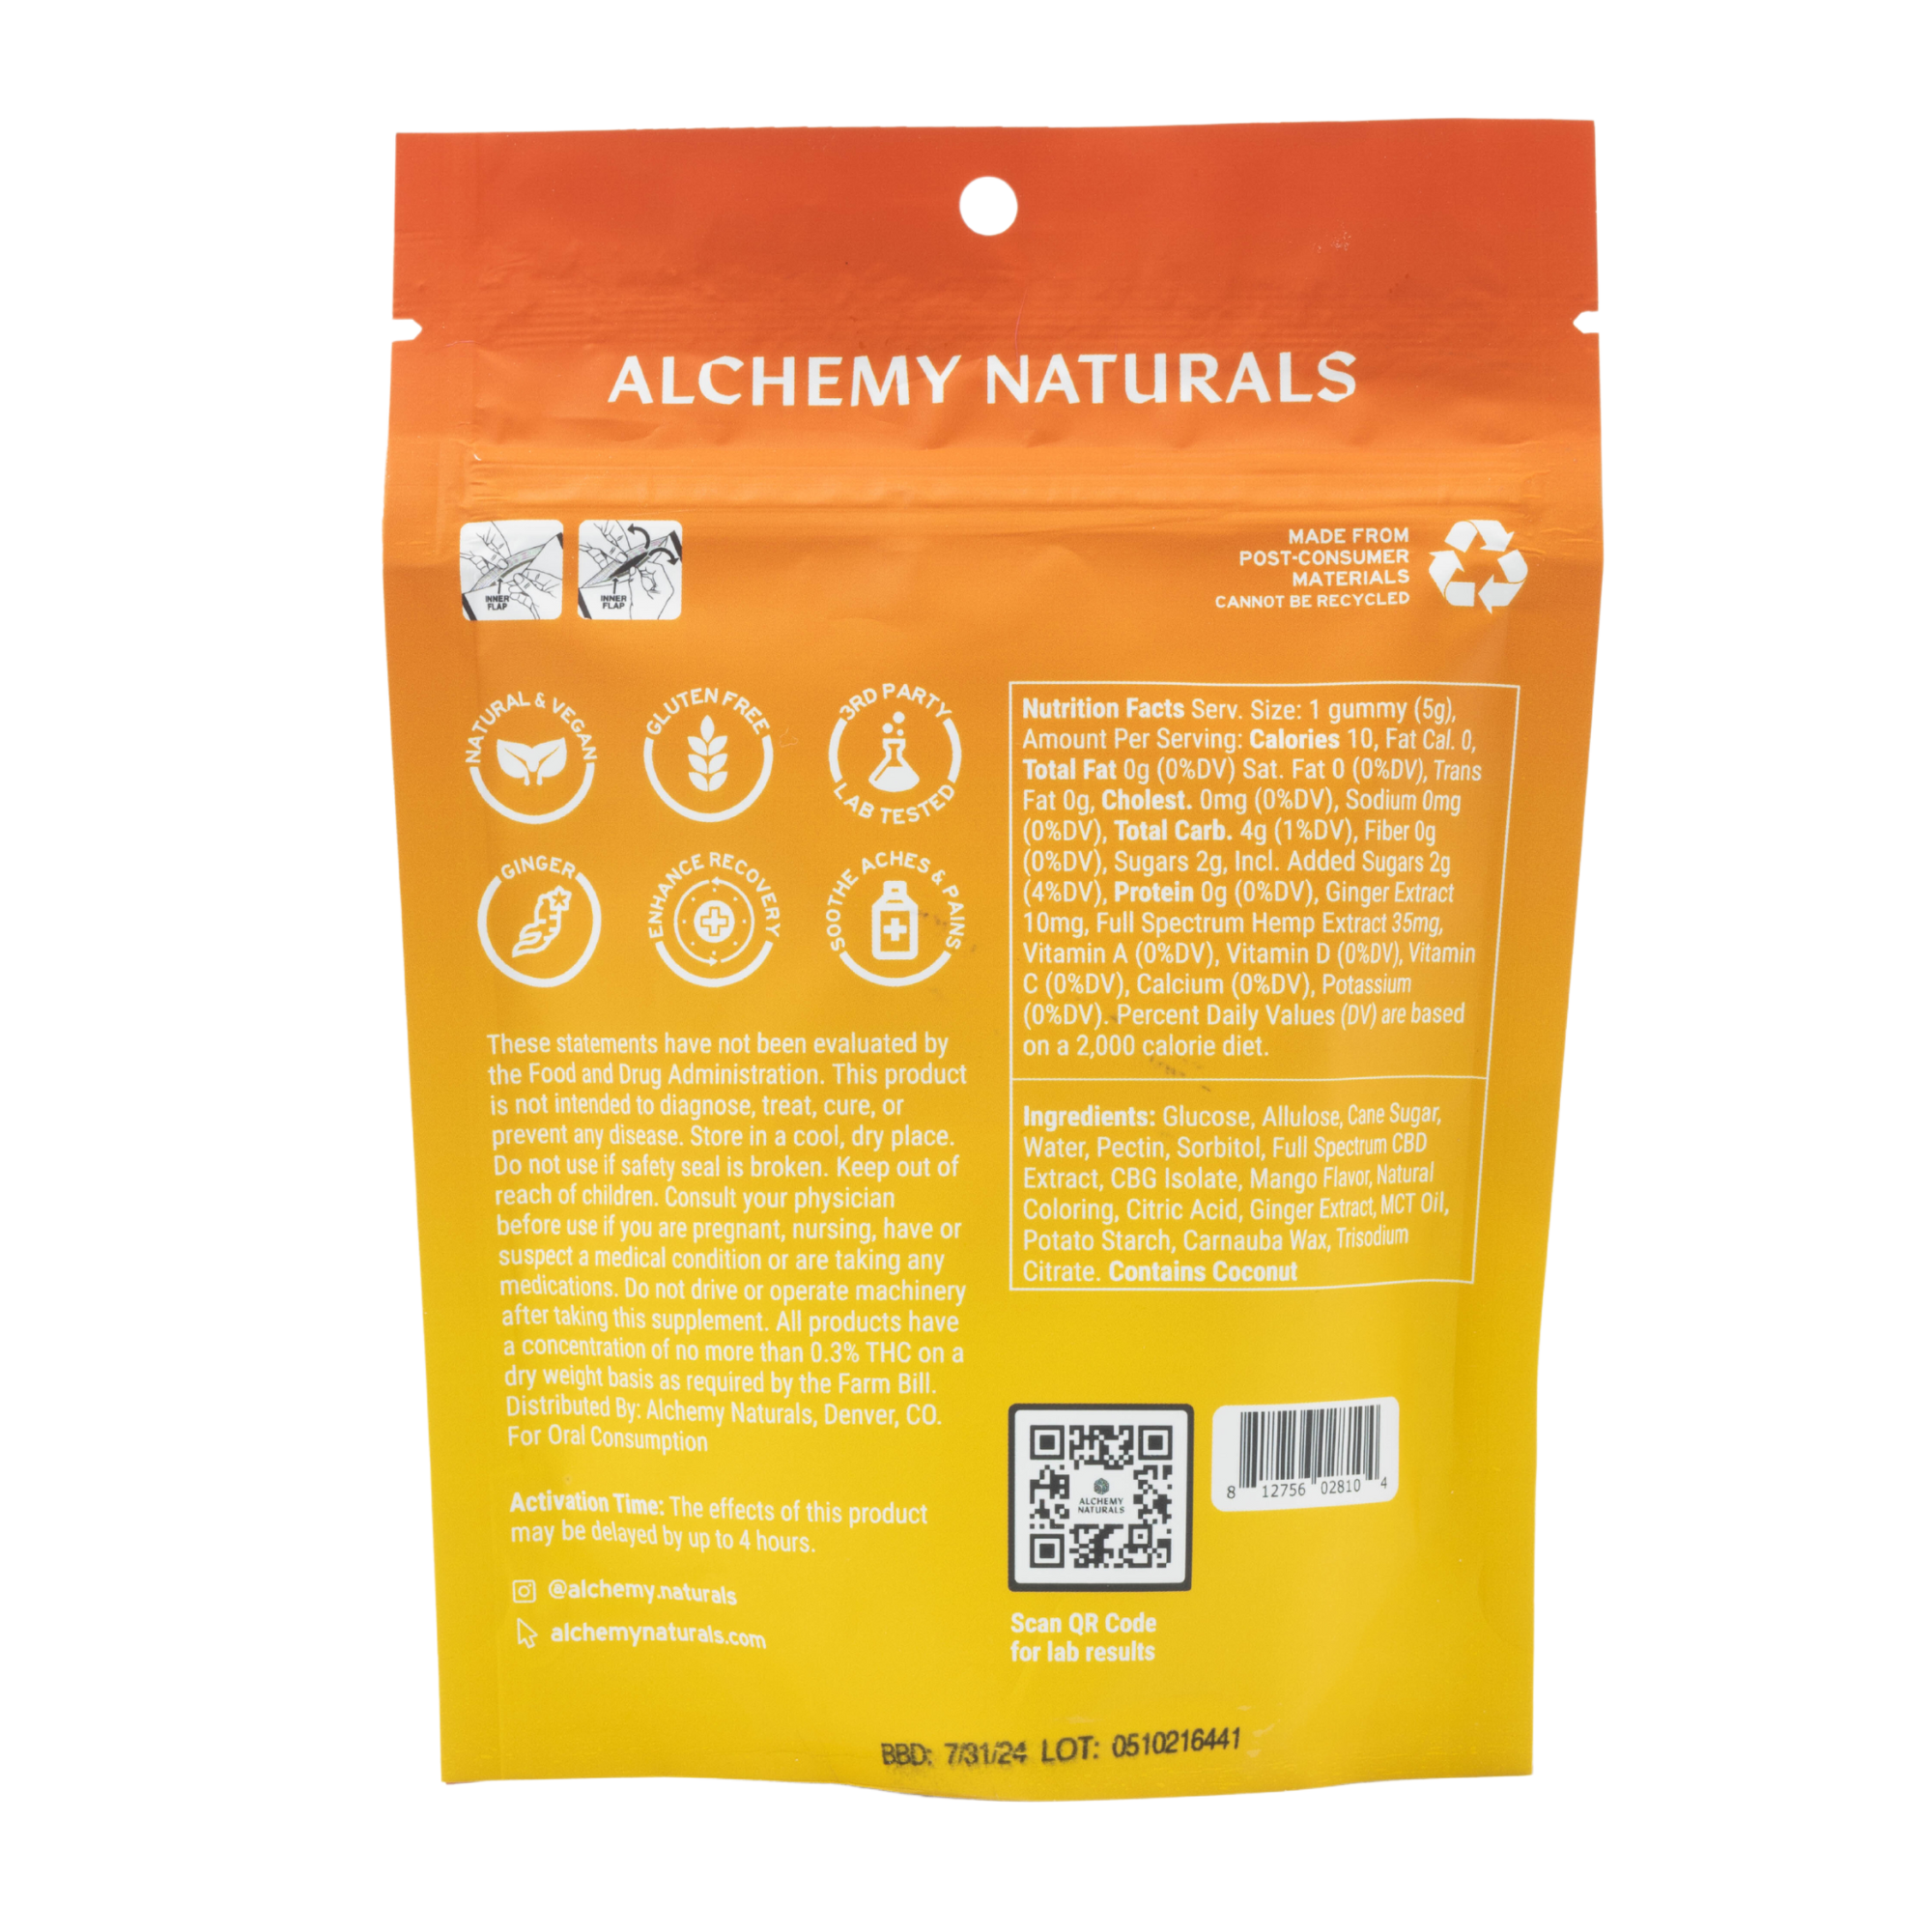 Alchemy Naturals - Relief